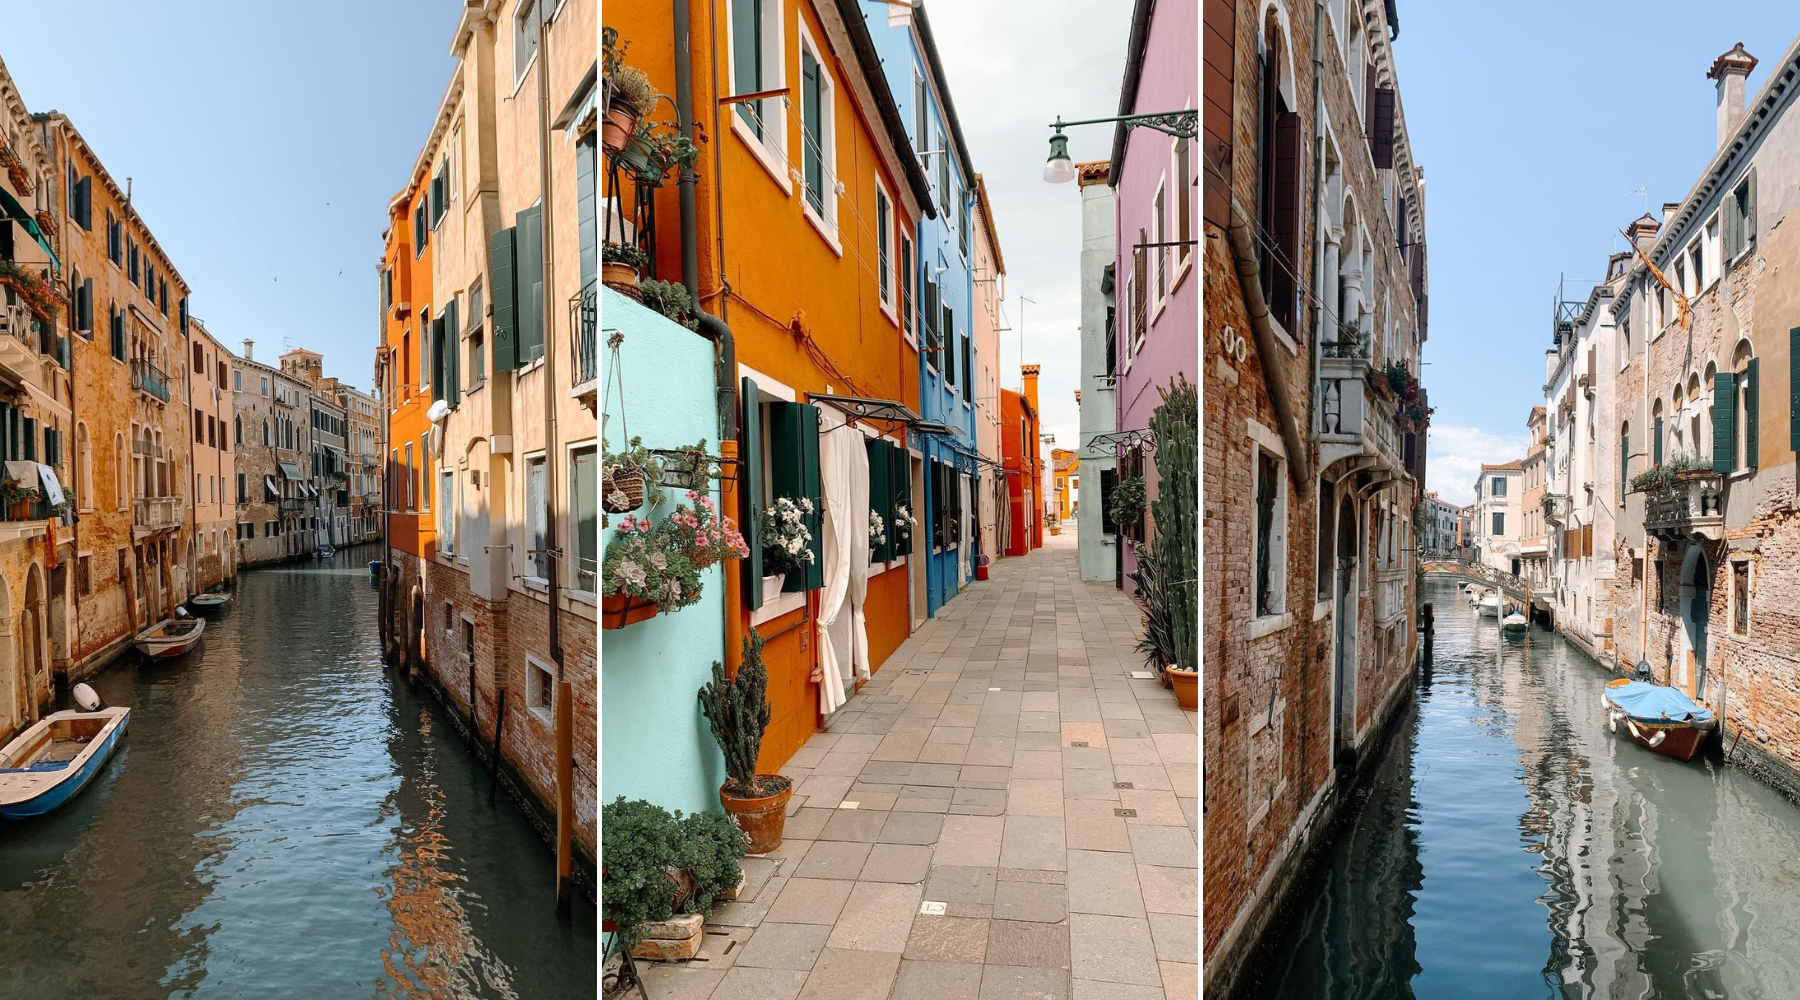 Ovog februara, svi putevi vode u Veneciju – donosimo osam razloga zašto